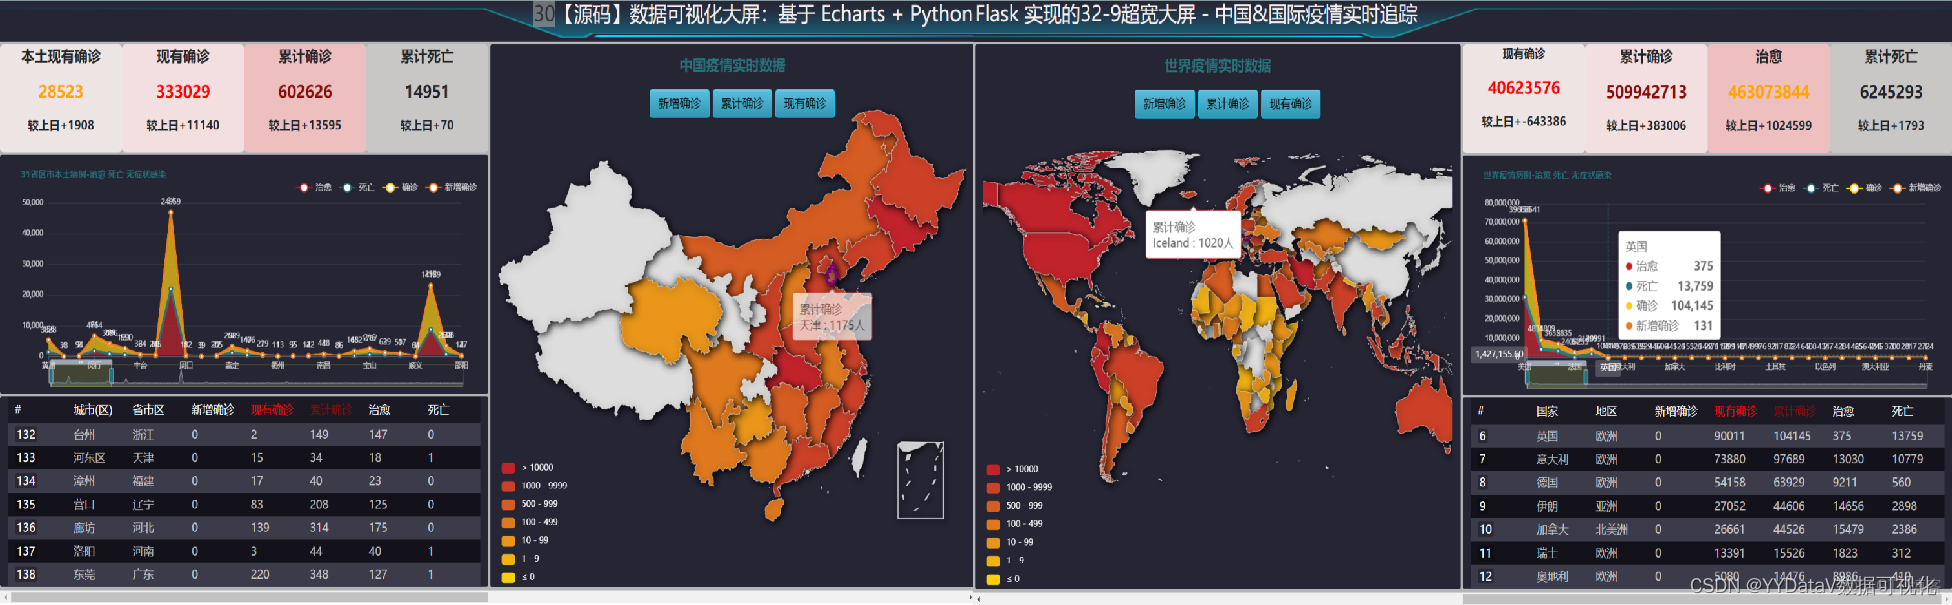 30【源码】数据可视化大屏：基于 Echarts + Python Flask 实现的32-9超宽大屏 - 中国&国际疫情实时追踪_数据可视化_05